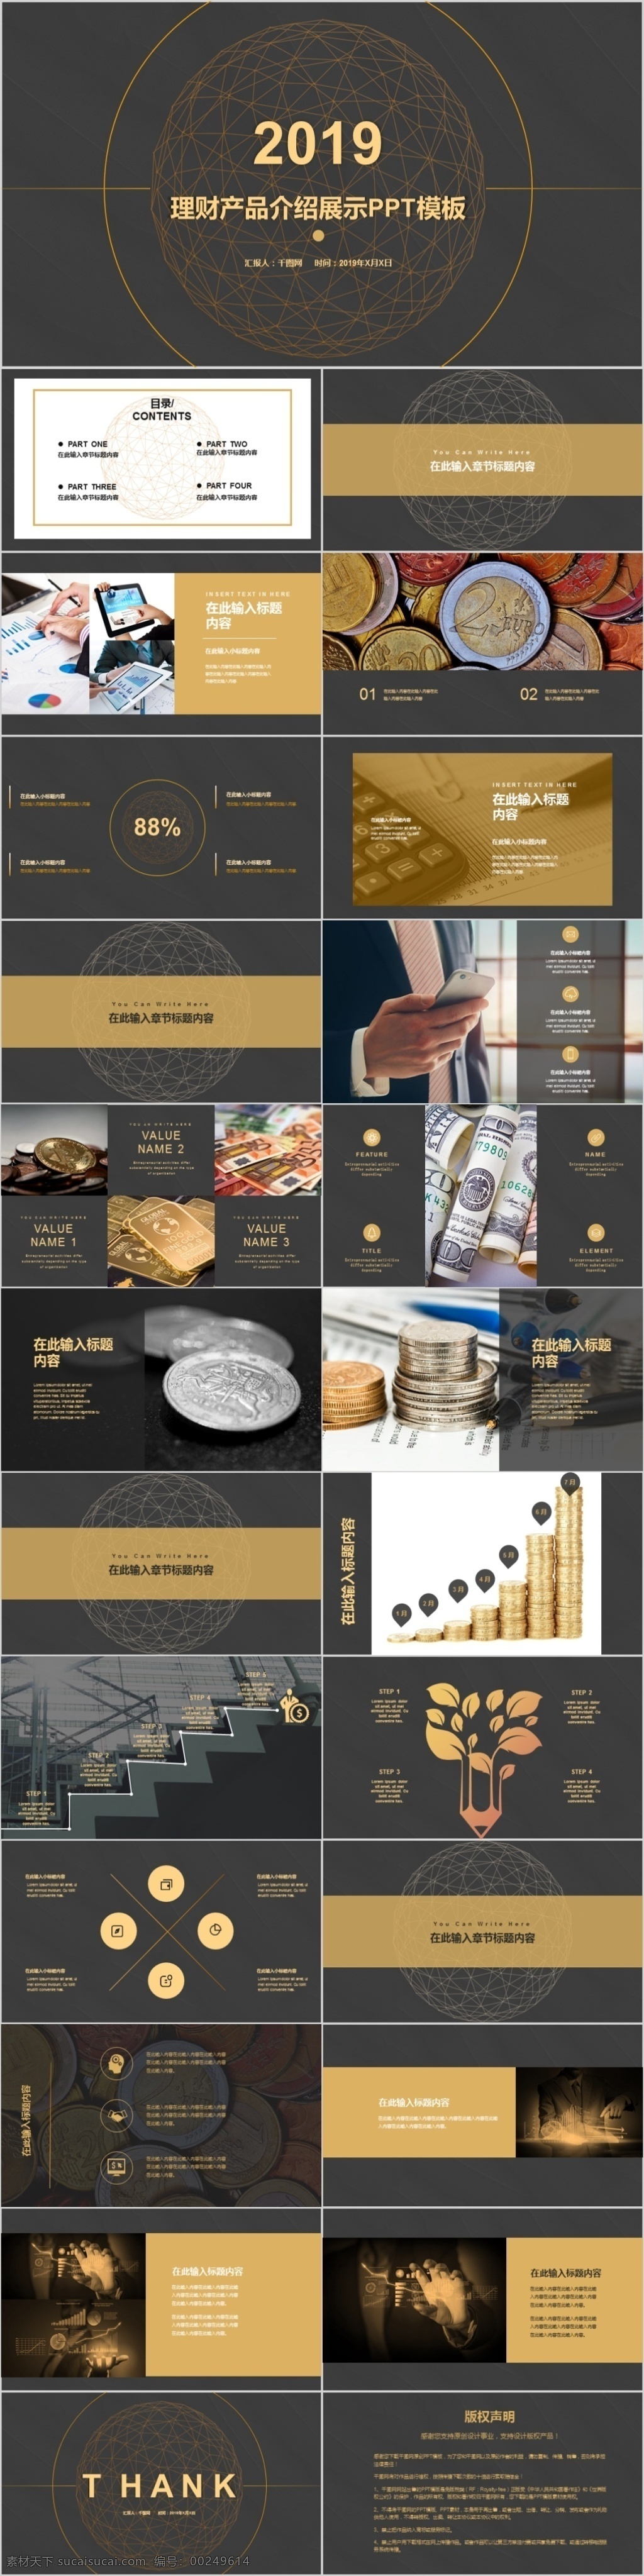 2019 理财 产品 介绍 展示 模板 2019投资 适用于银行 投资公司 产品展示 产品介绍模板 大气 精致 金色 黑色